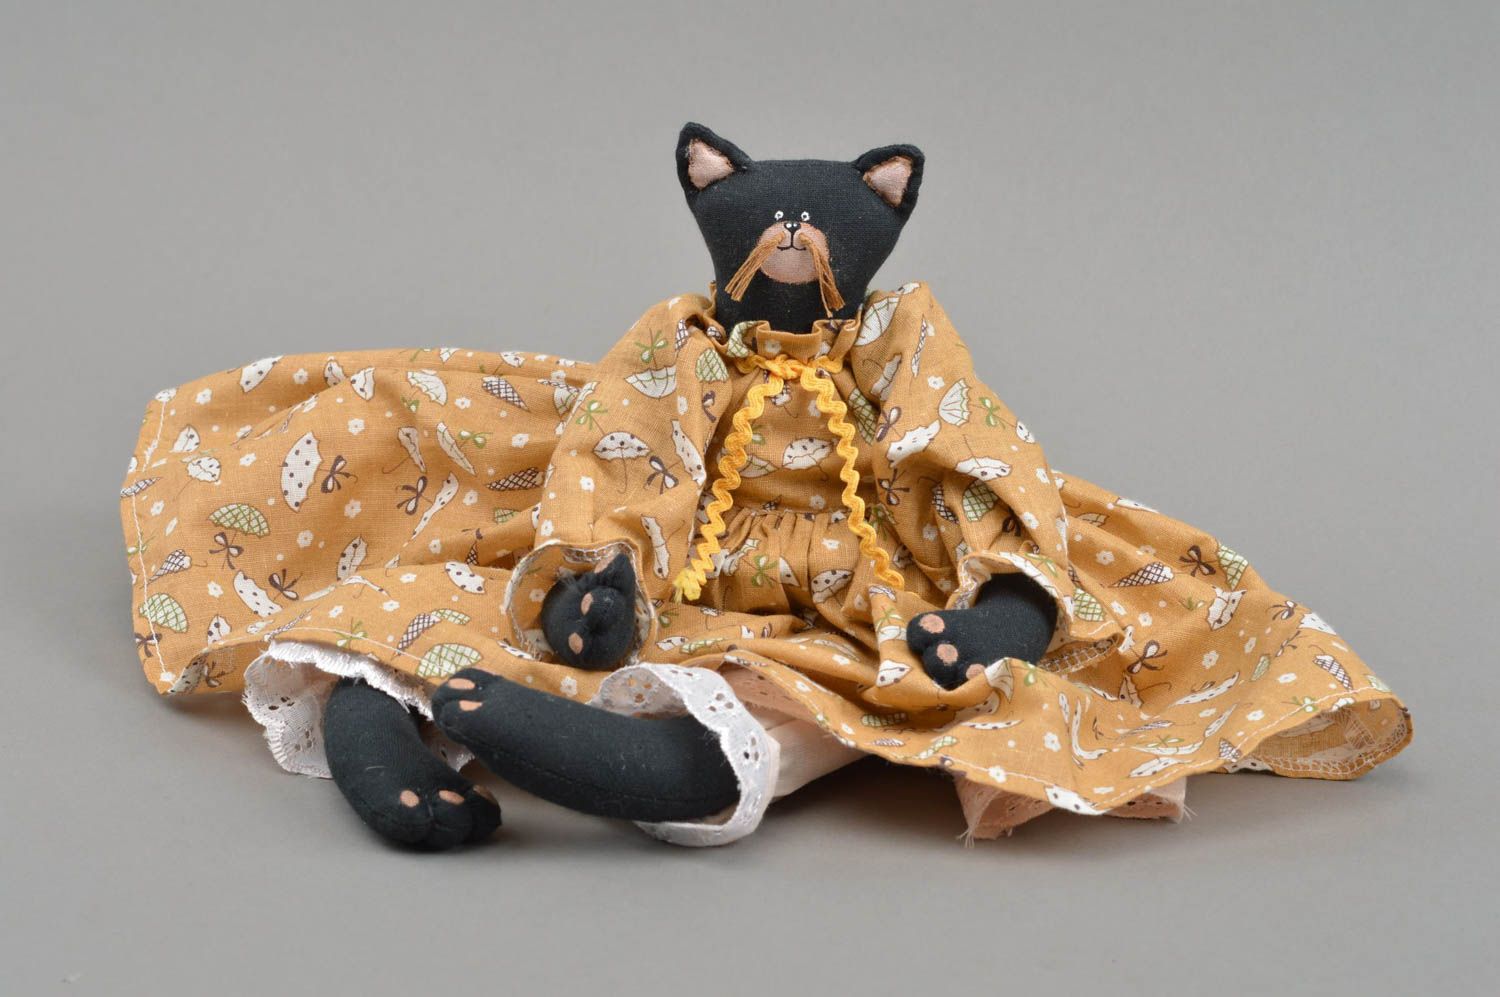 Мягкая кукла кошка в платье из хлопка игрушка для интерьера и детей хенд мейд фото 3